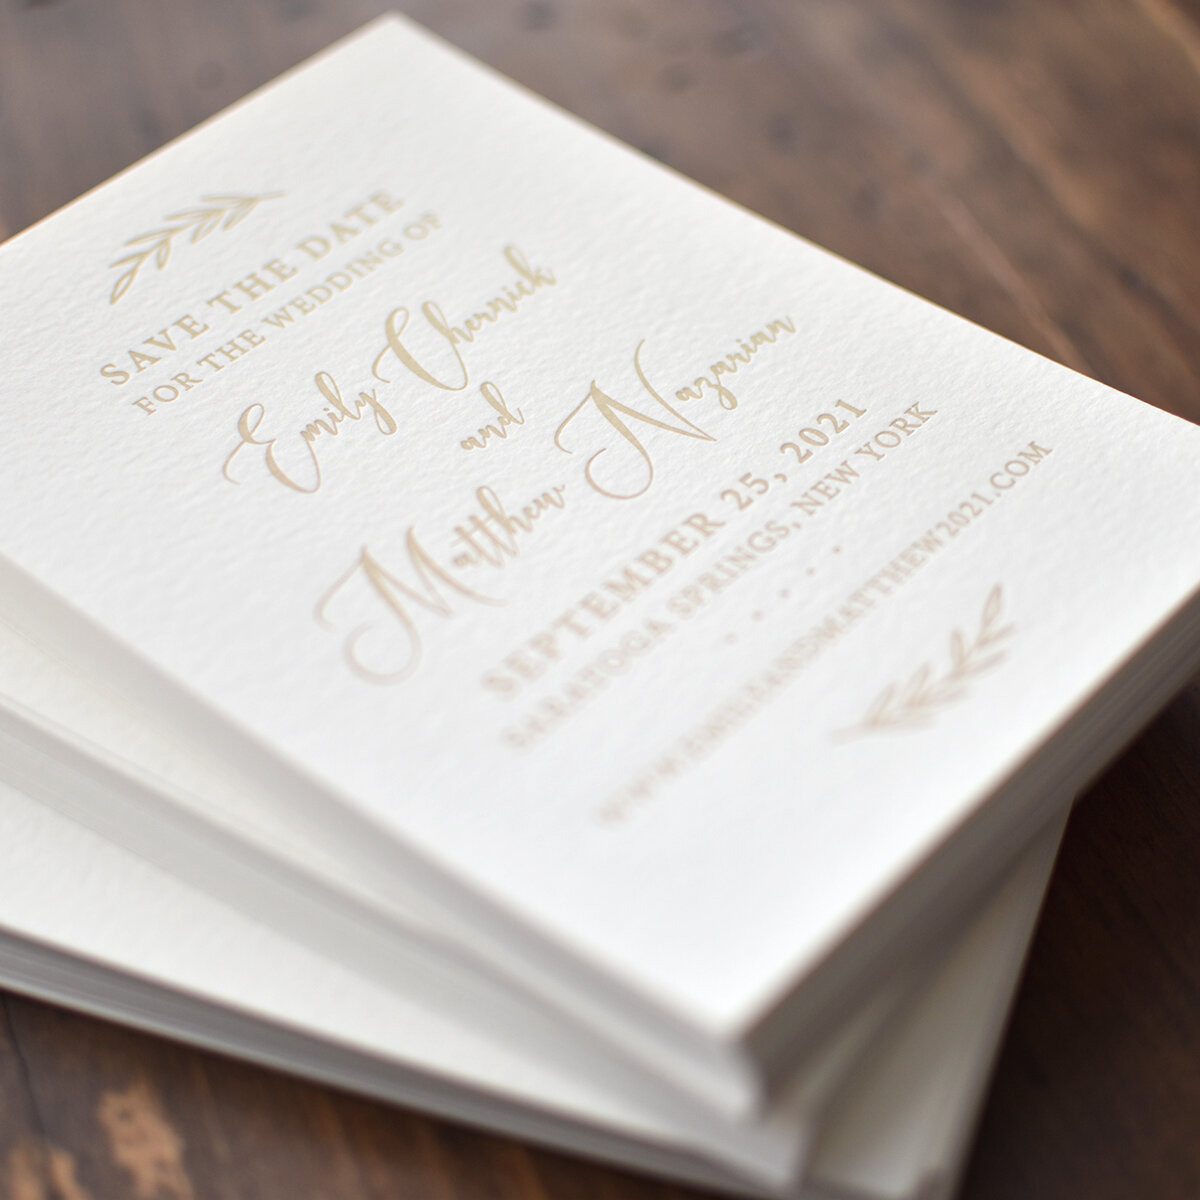 Custom letterpress wedding invitation on handmade paper for The Adelphi in Upstate New York